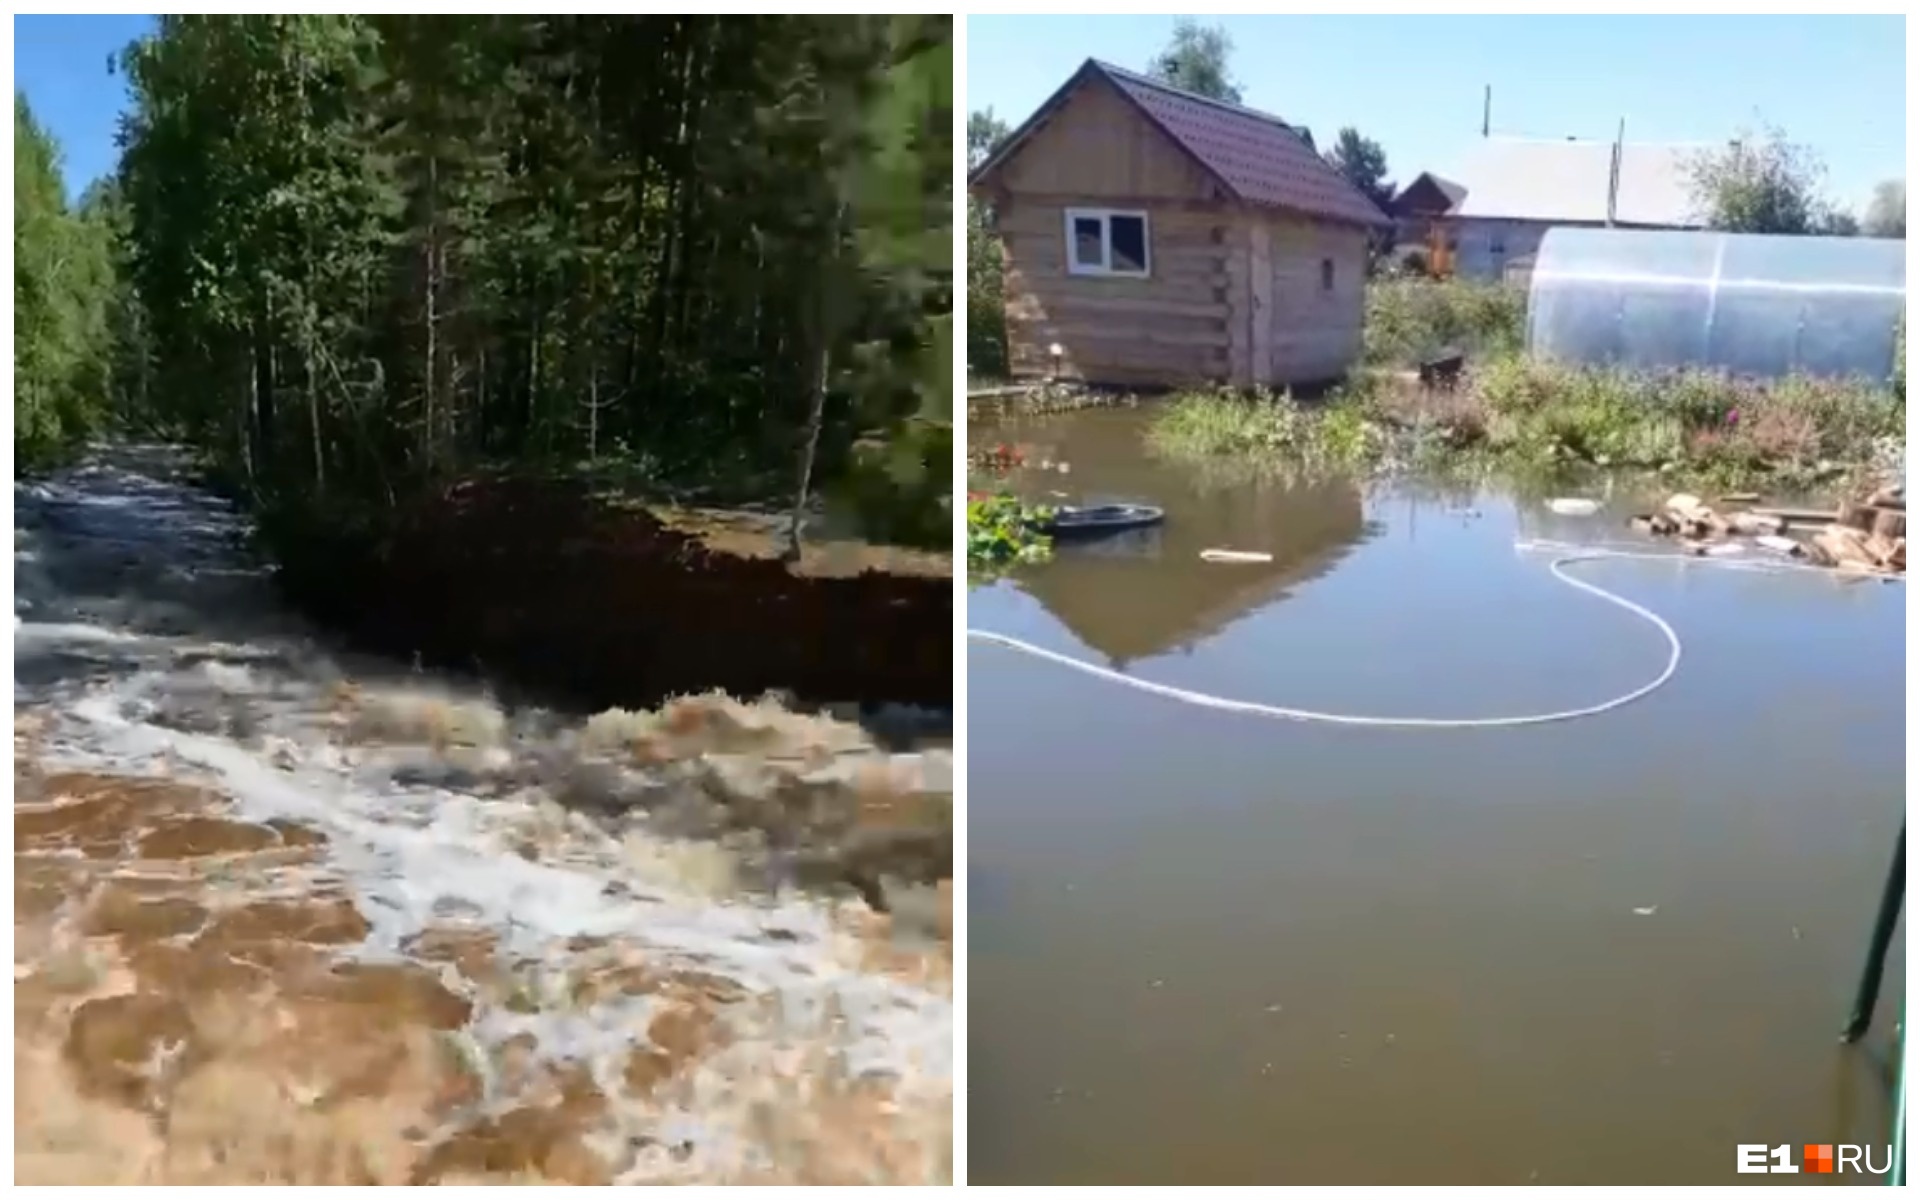 В Свердловской области затопило несколько городов и садов: видео